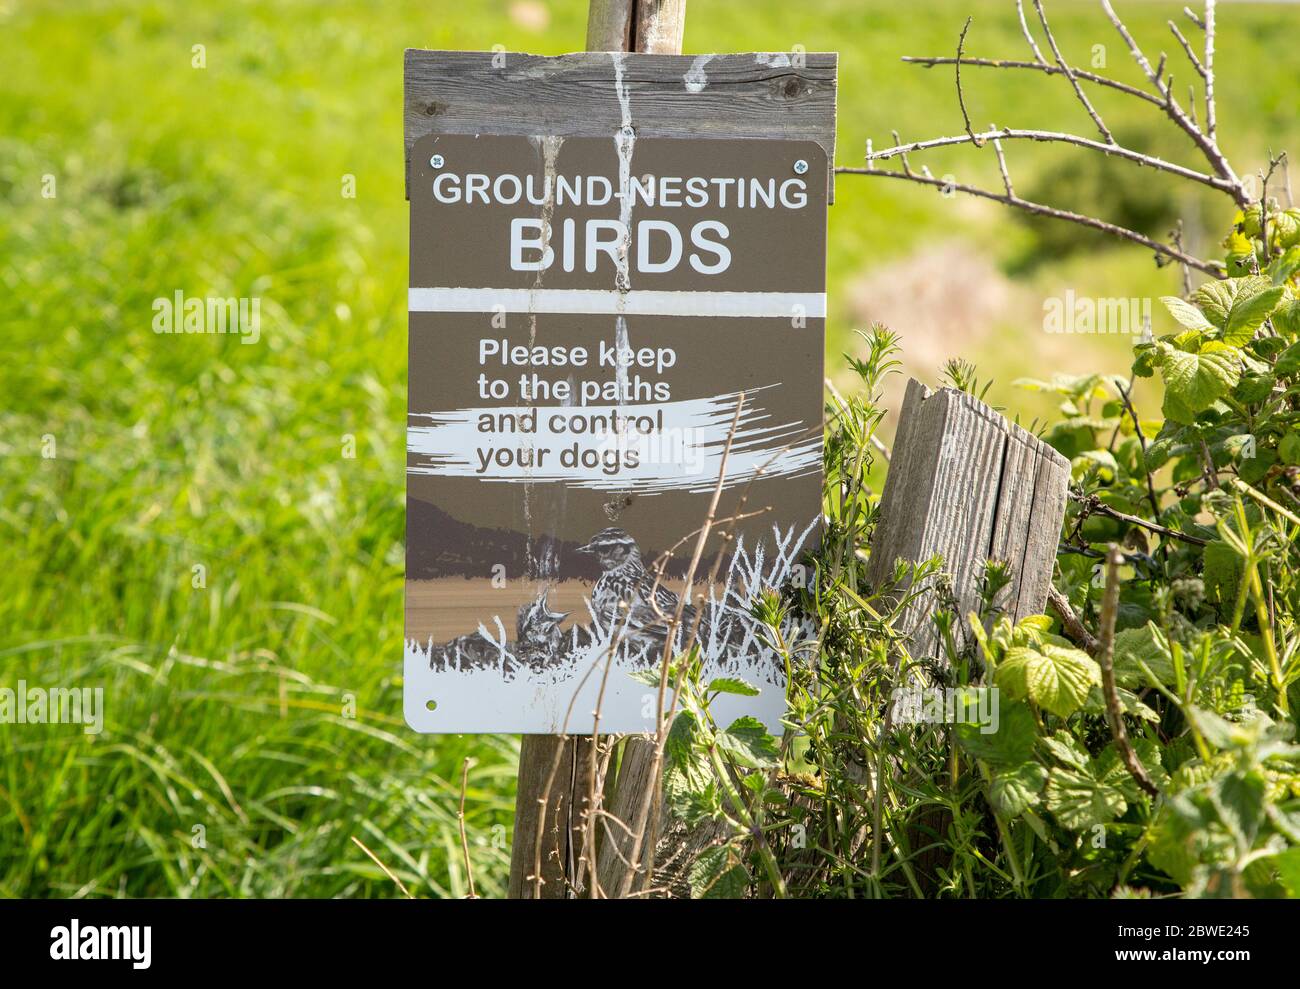 Les oiseaux nicheurs au sol signent sur l'entretien des sentiers et des chiens de contrôle, Shingle Street, Hollesley, Suffolk, Angleterre, Royaume-Uni Banque D'Images